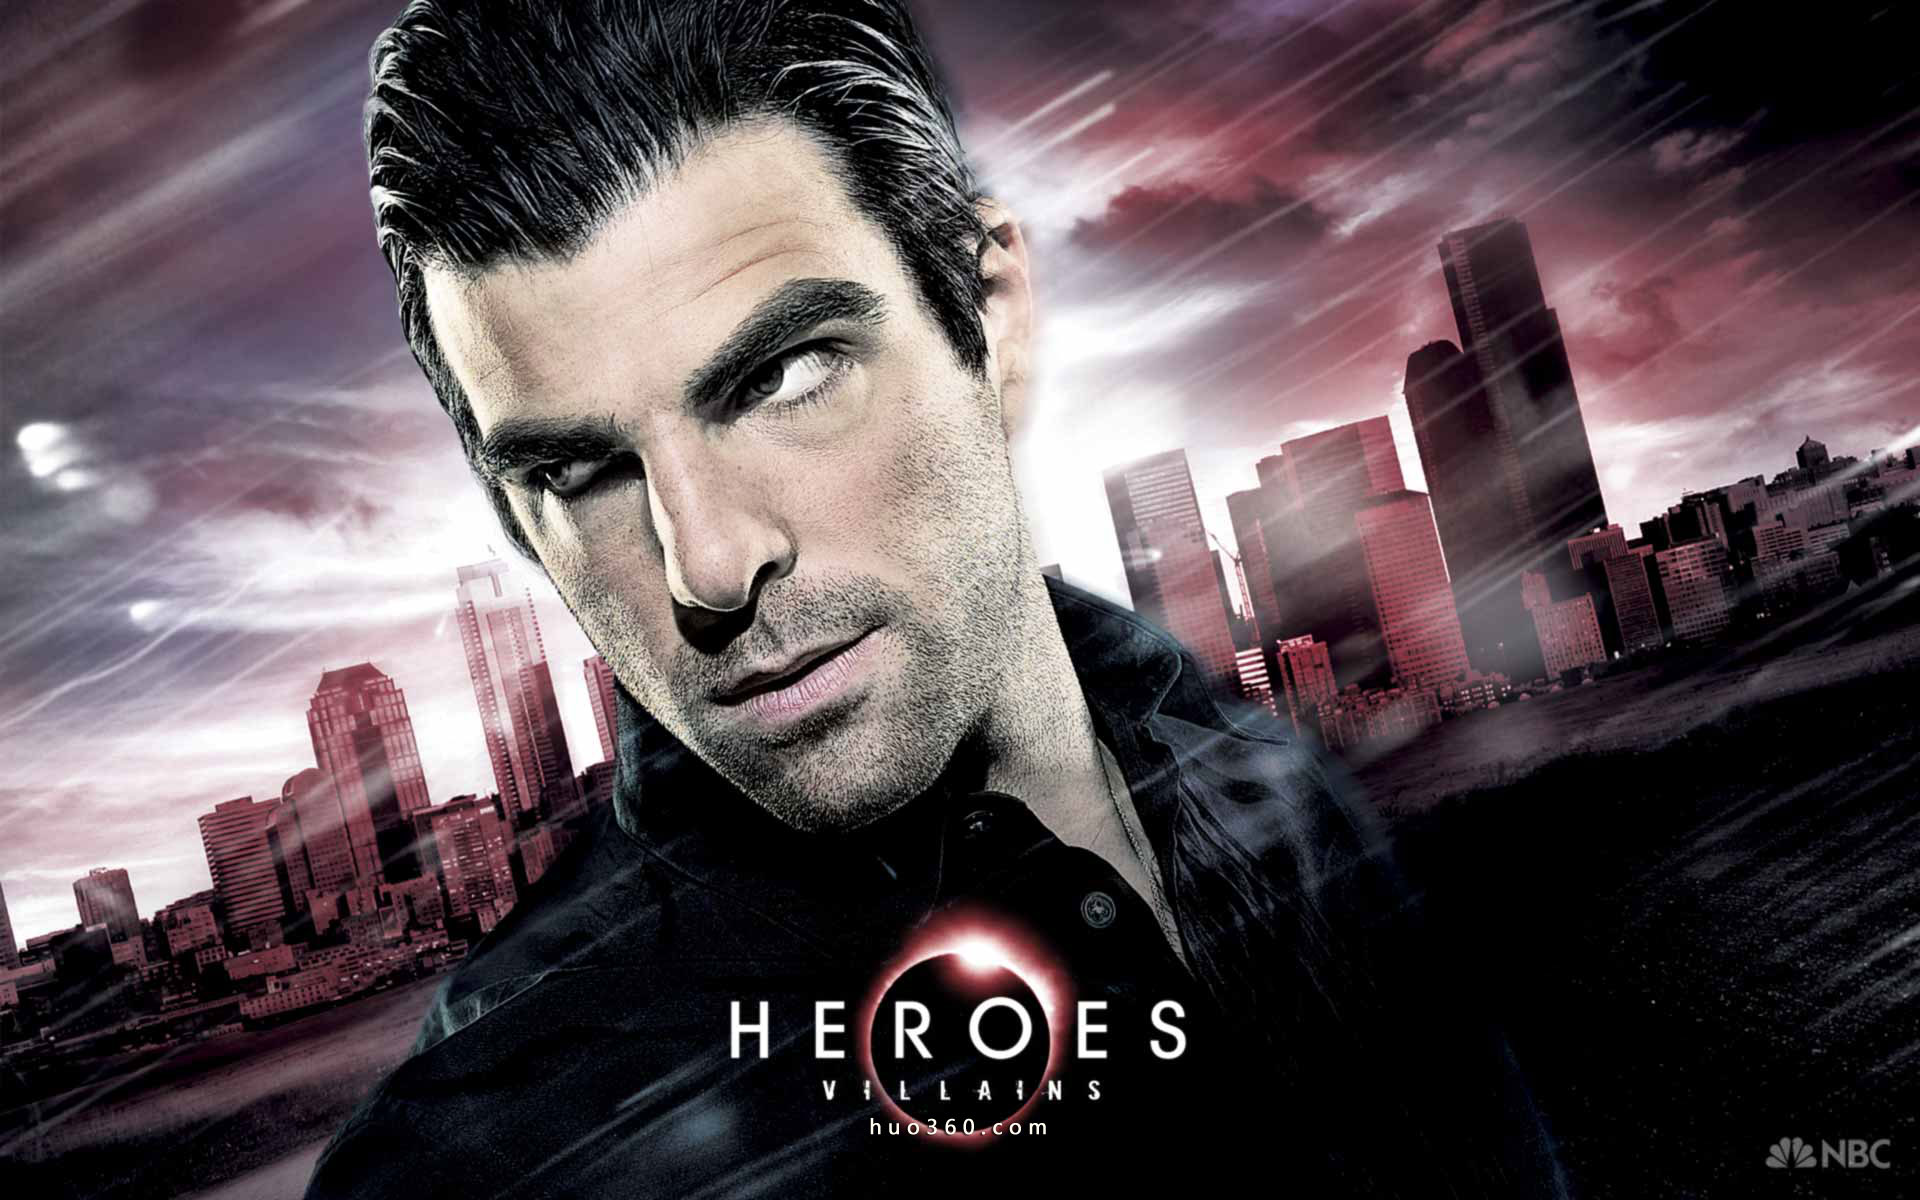 Heroes (TV Series), Zachary Quinto, TV posters - desktop wallpaper